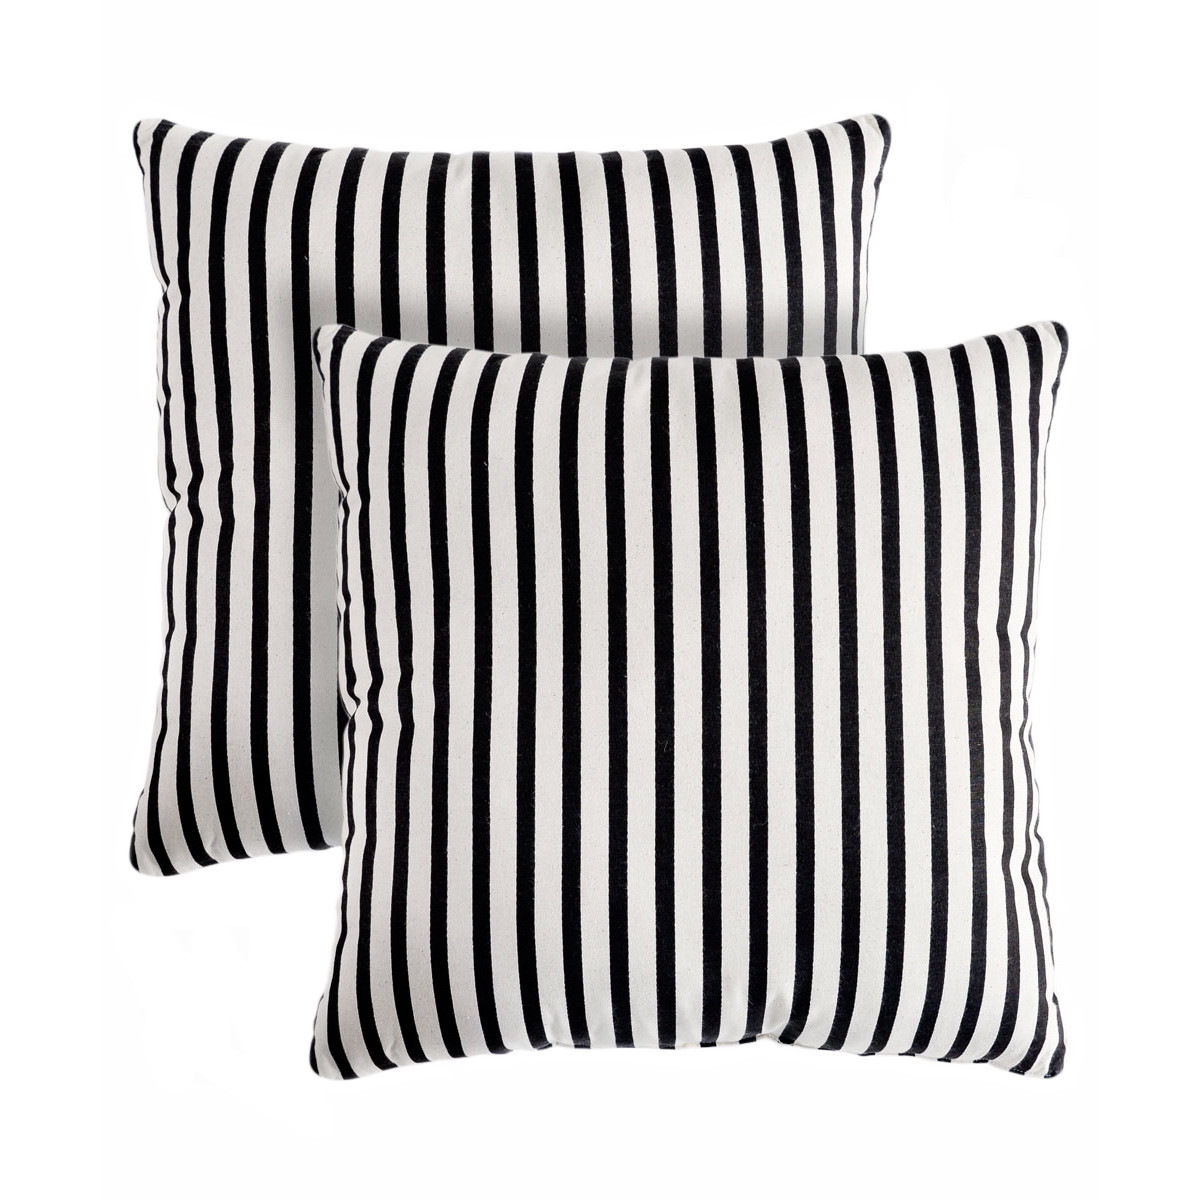 Medford Stripe Cotton Throw Pillow - Image 0